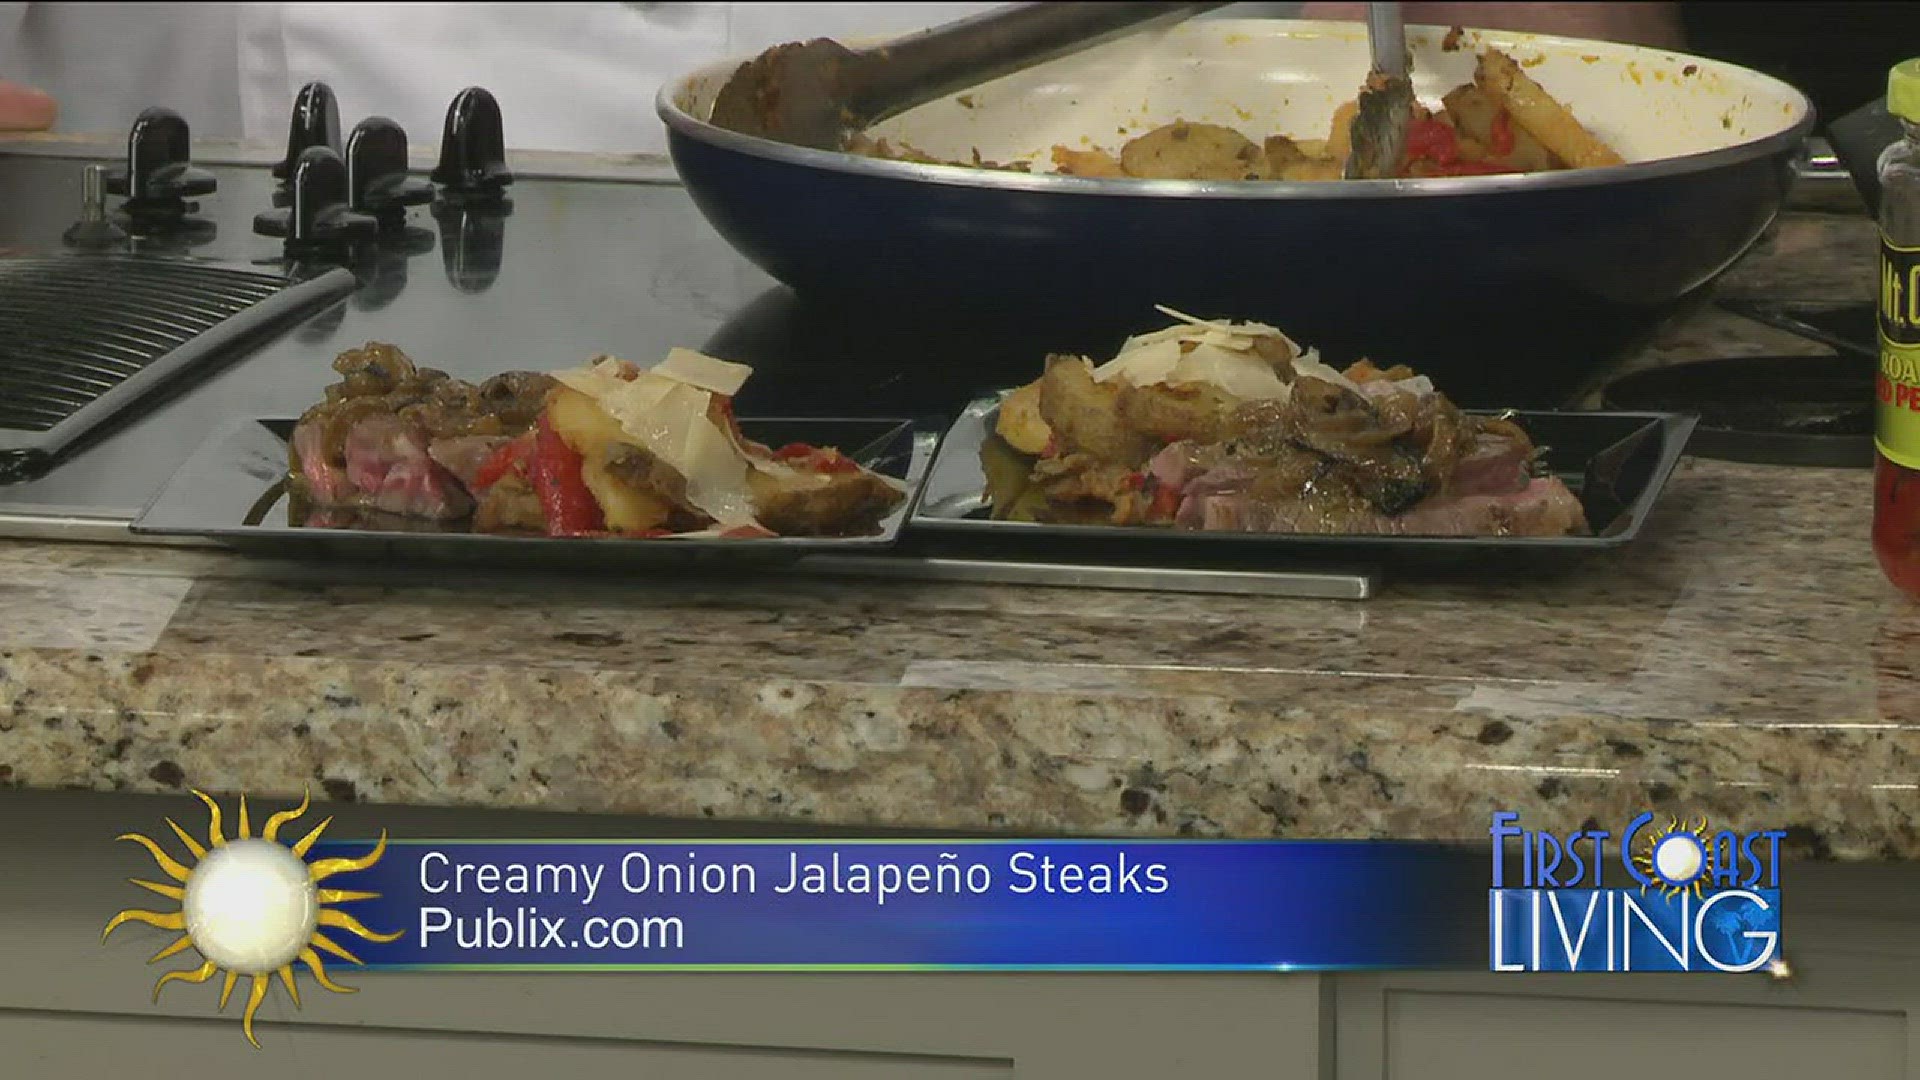 Publix - Creamy Onion Jalapeno Steaks